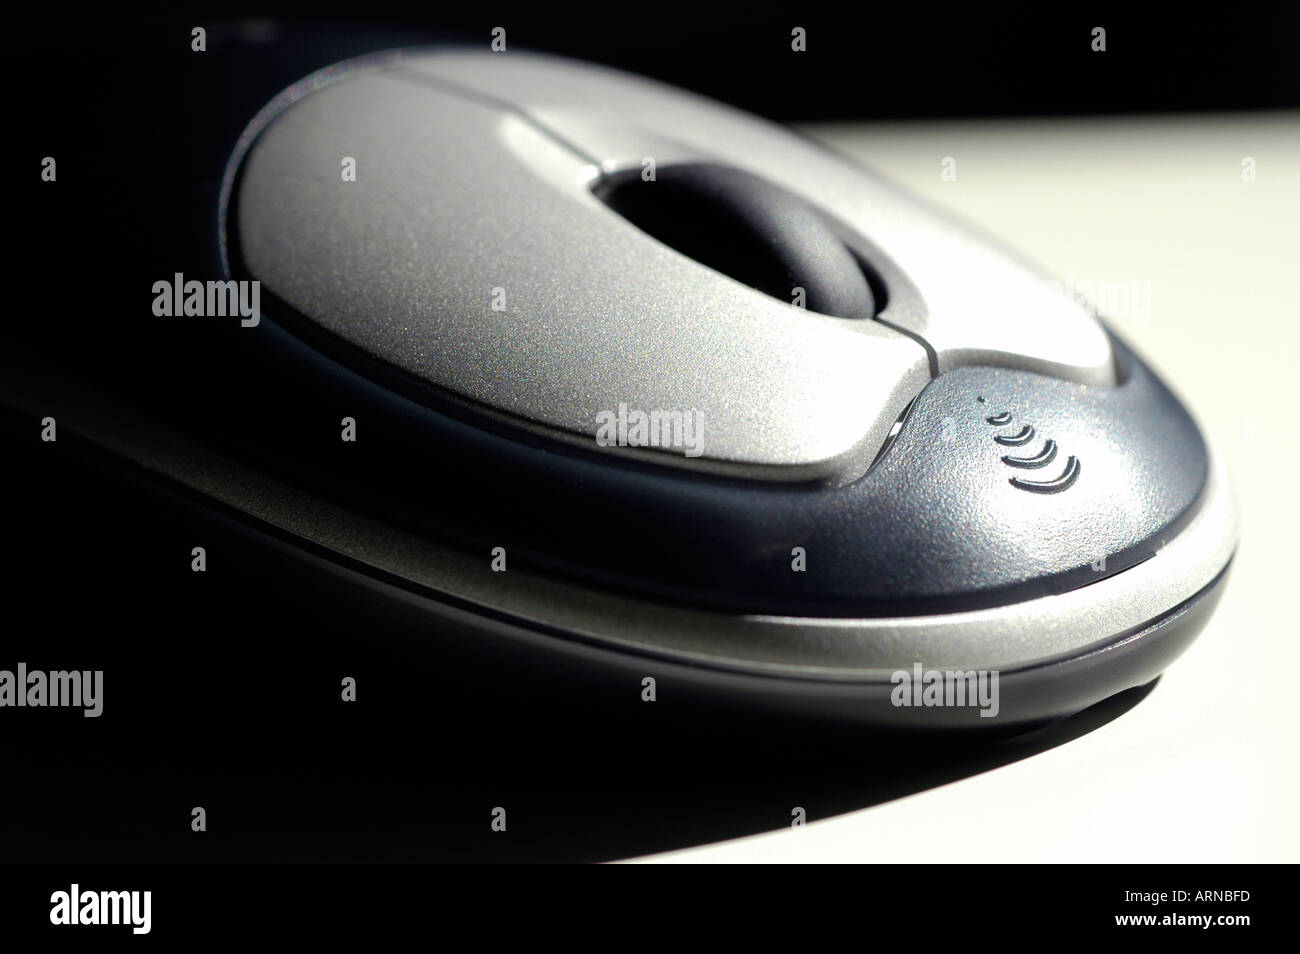 Une souris d'ordinateur contemporain, avec la norme la plus courante comprend : deux boutons et une roulette de défilement Banque D'Images